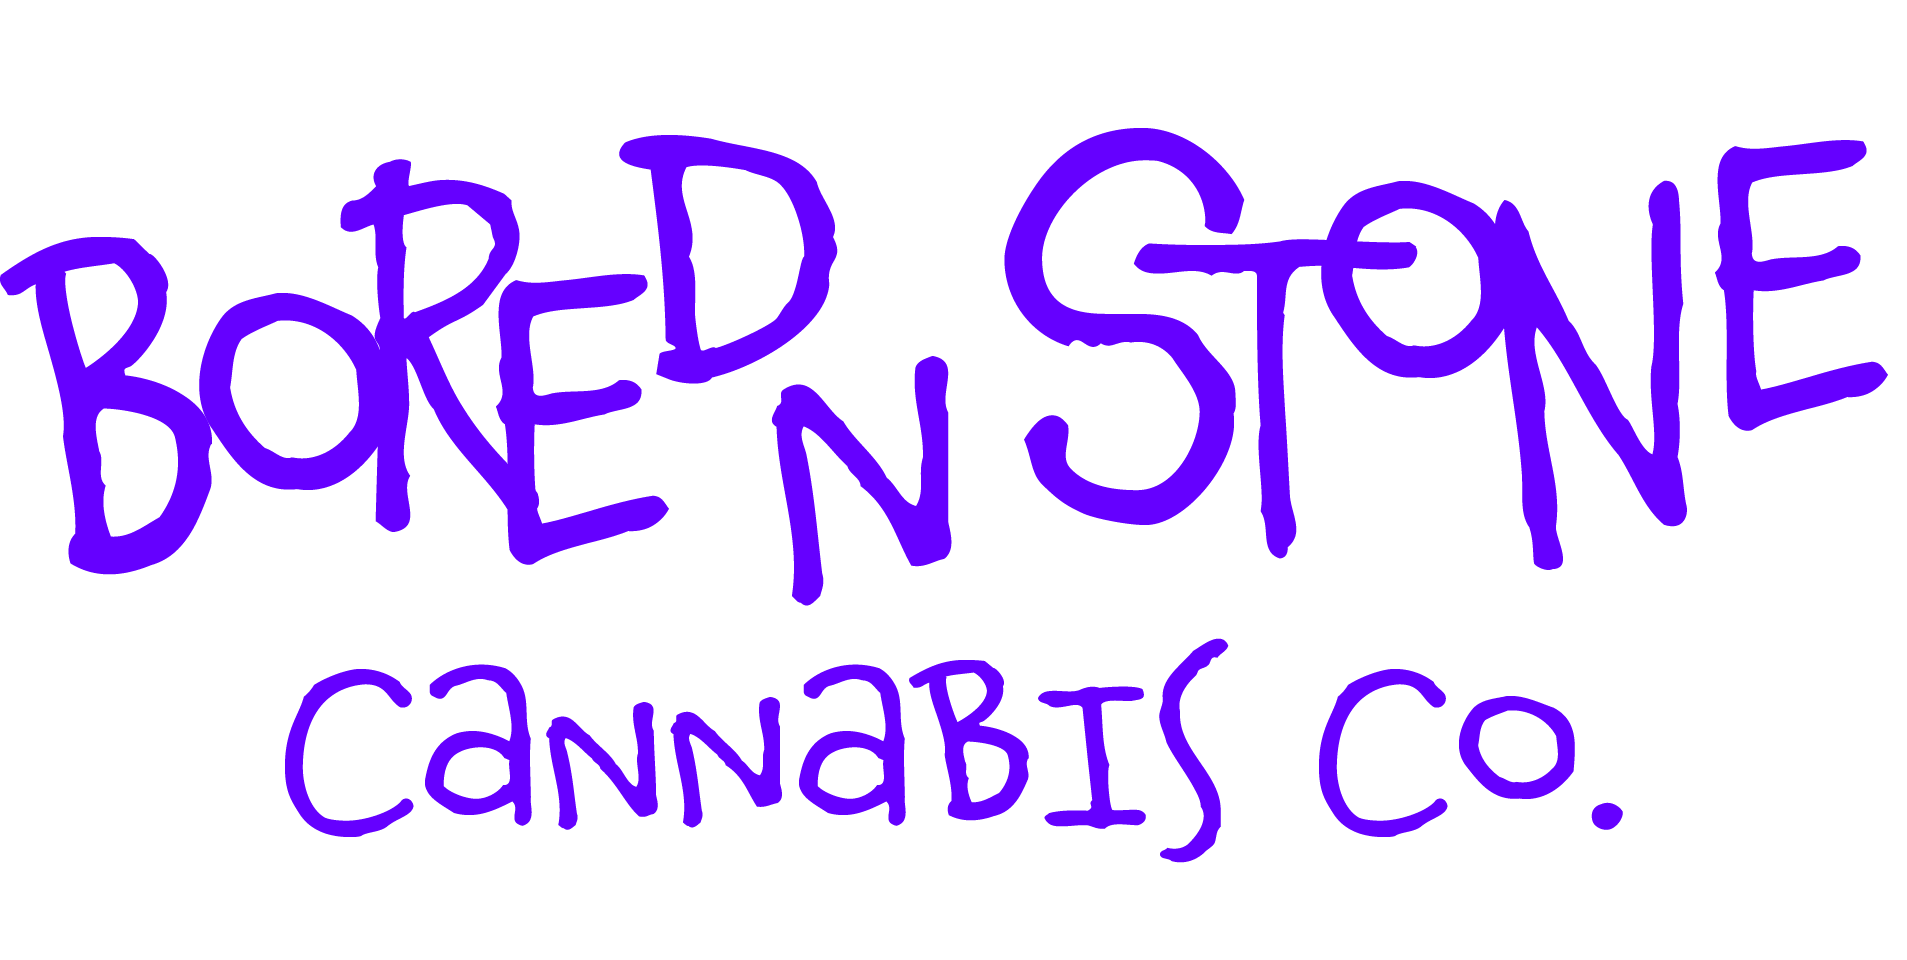 Bored n Stone Cannabis Co.